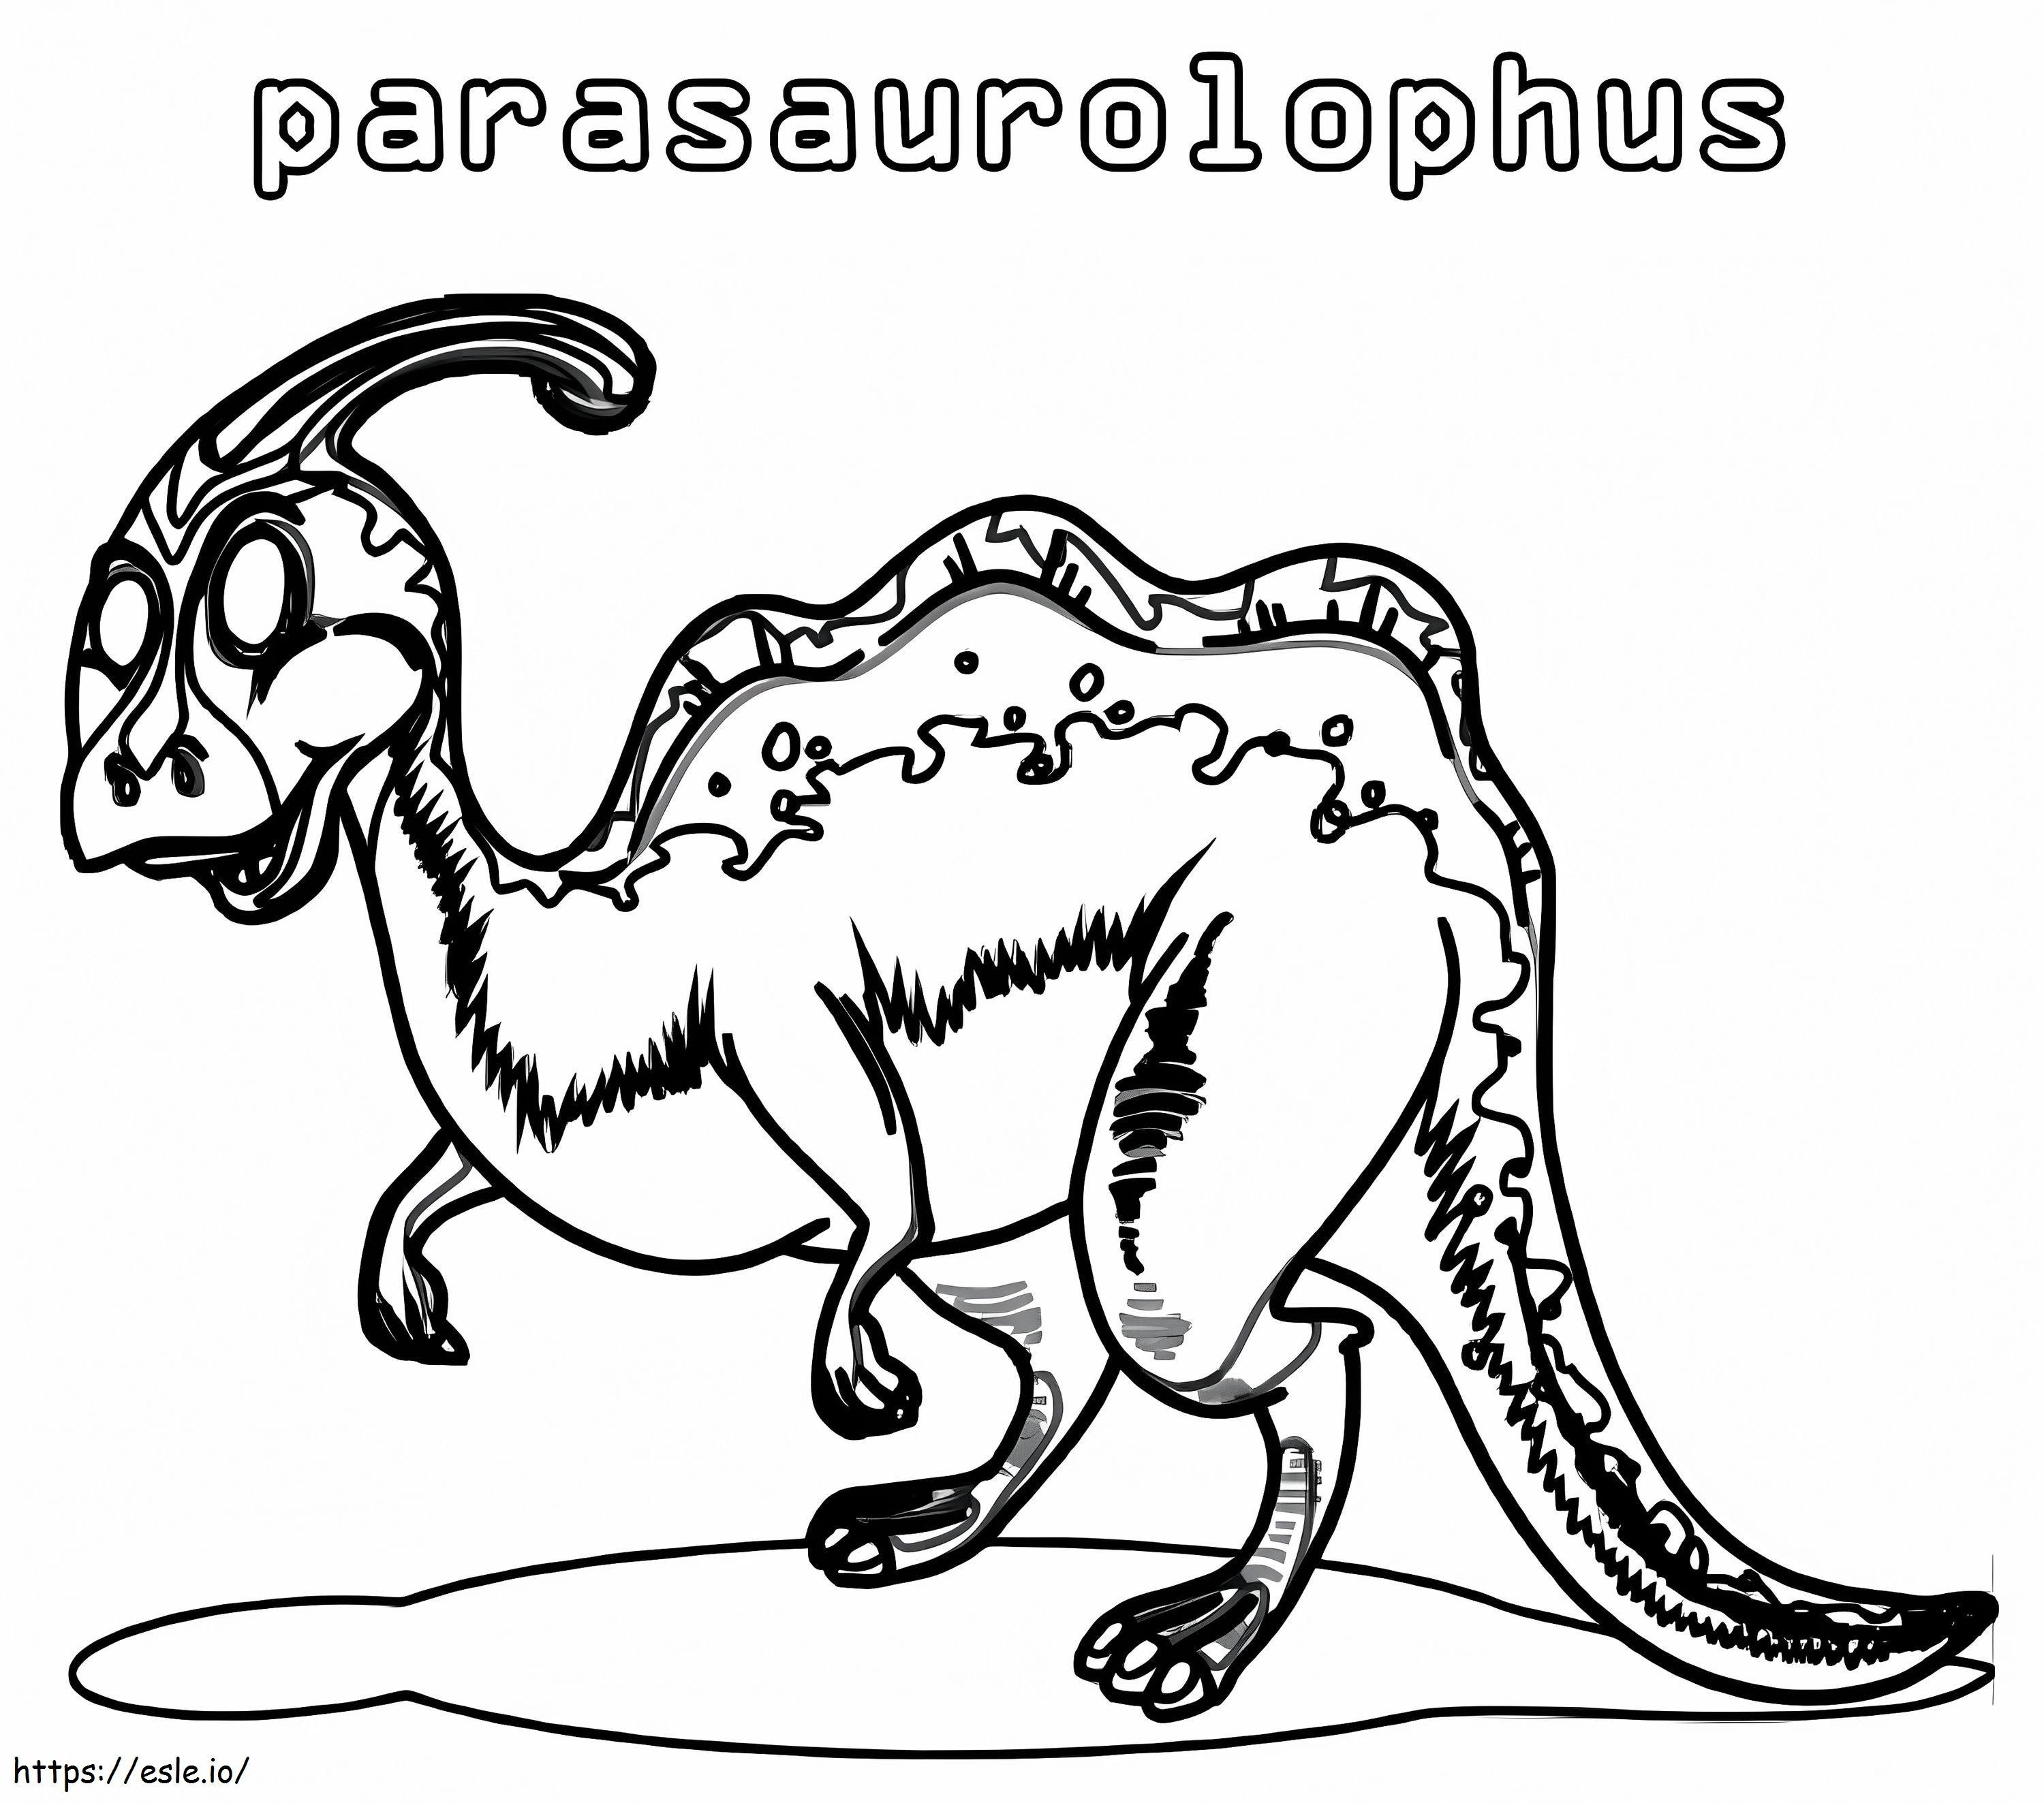 Parasaurolofo 13 para colorear